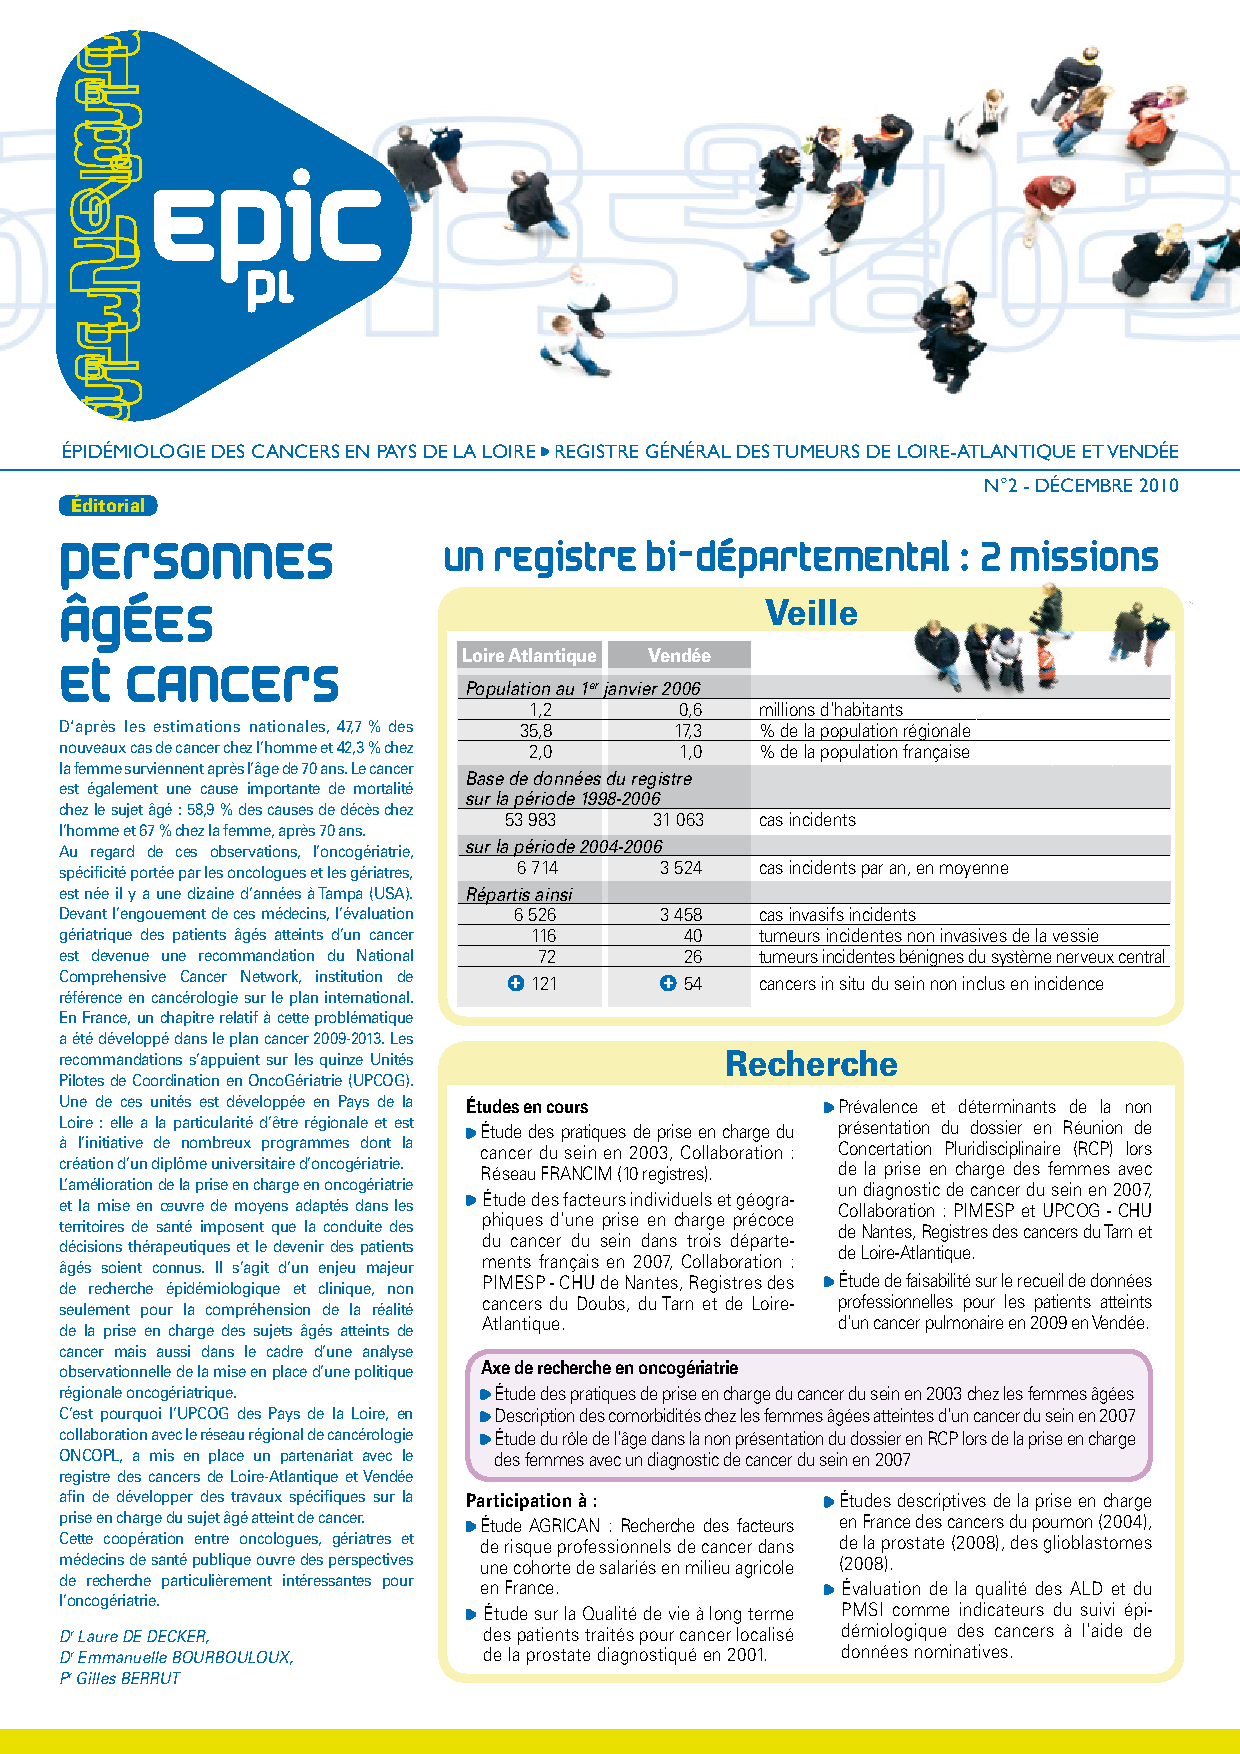 Registre des cancers Bulletin d'information n°2, Décembre 2010